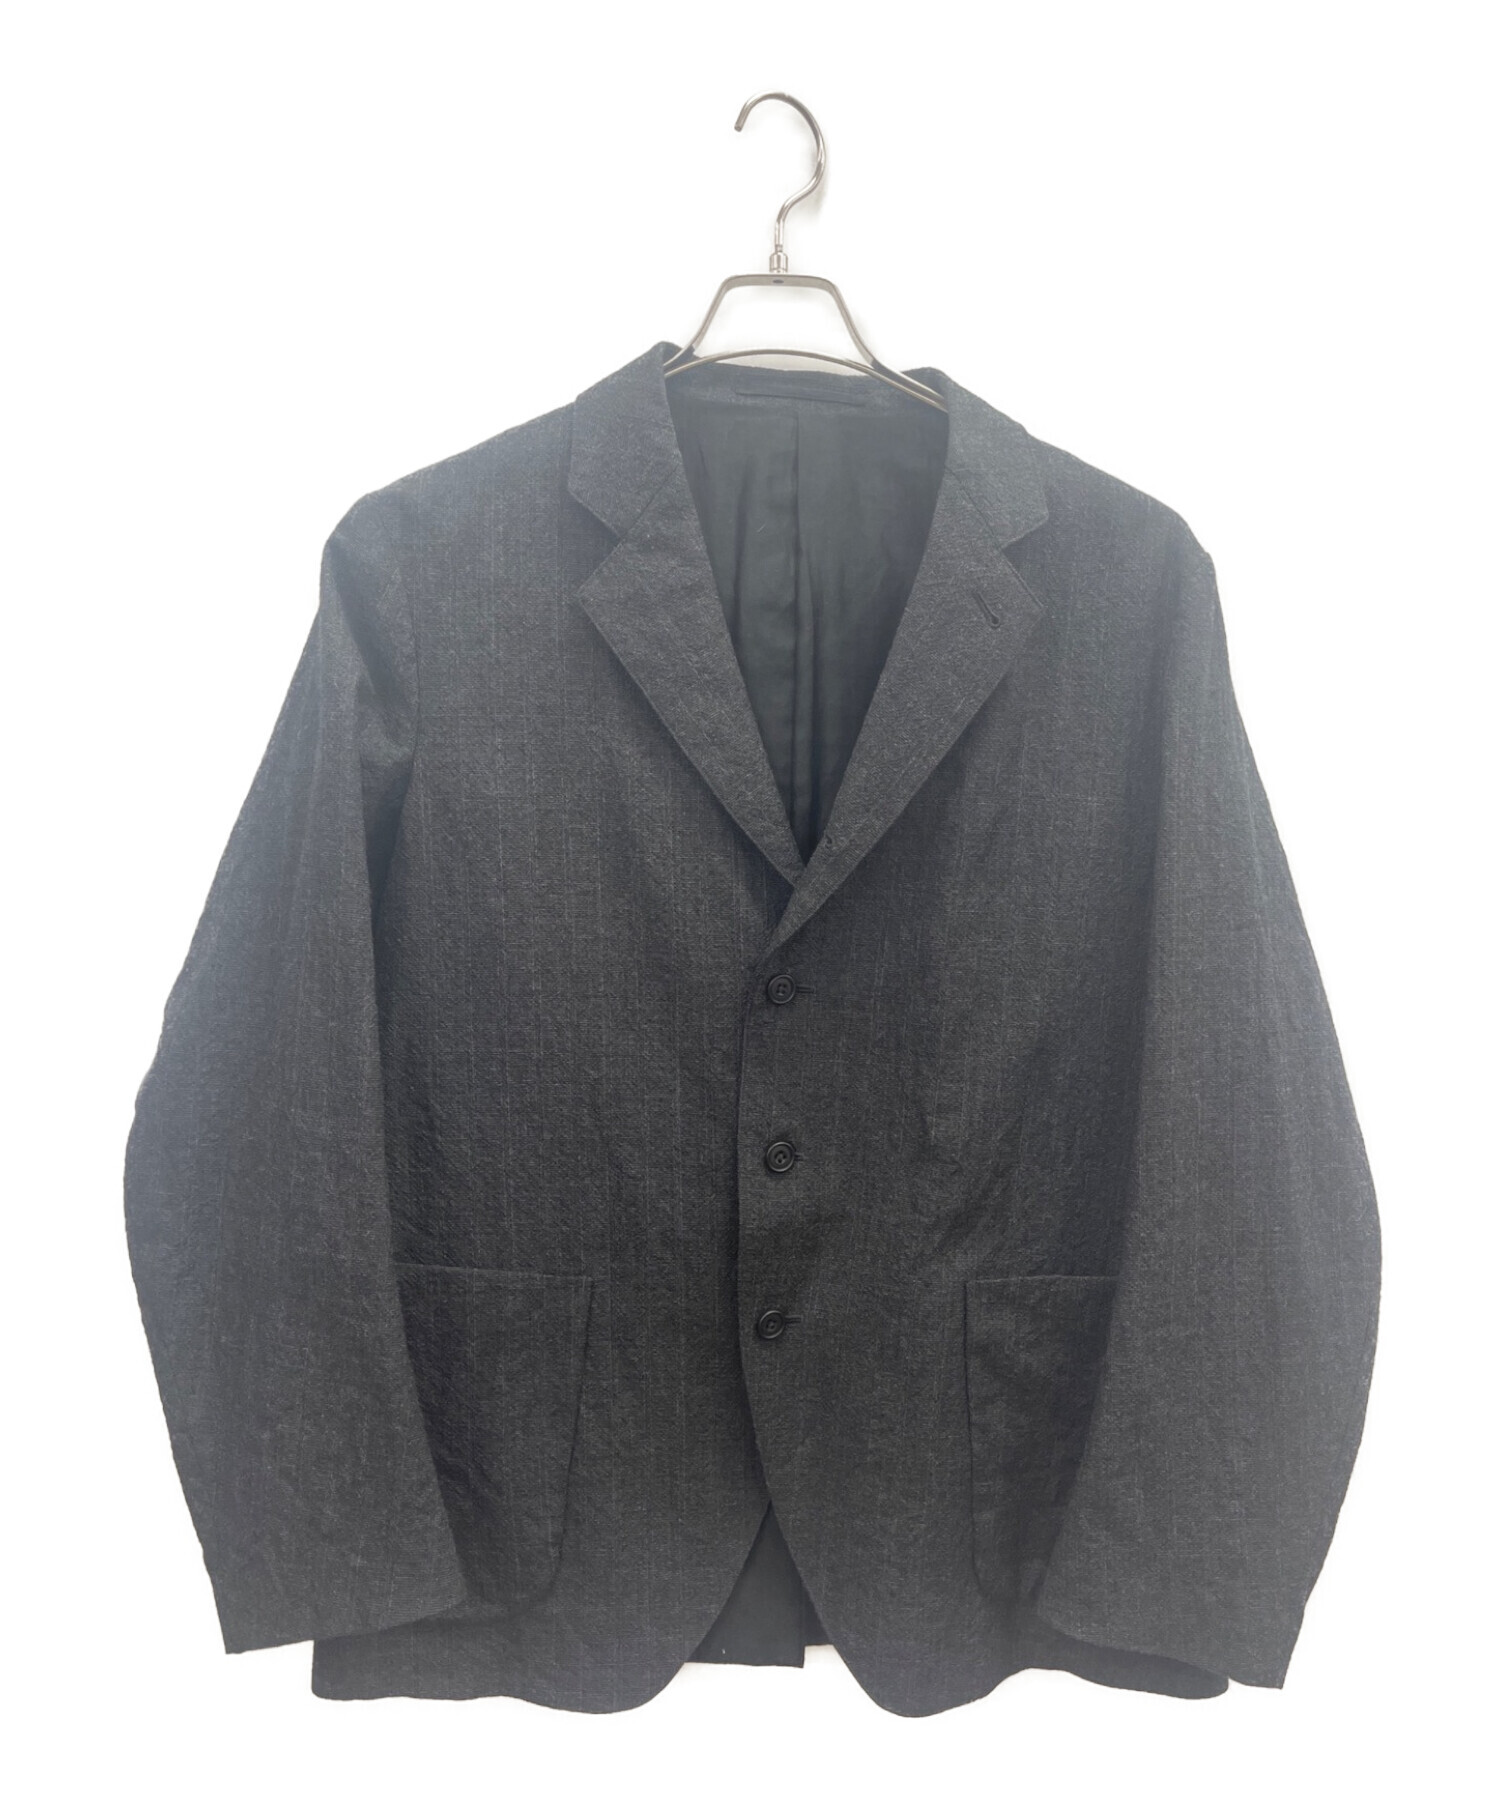 KAPTAIN SUNSHINE (キャプテンサンシャイン) テーラードジャケット チャコールグレー サイズ:38